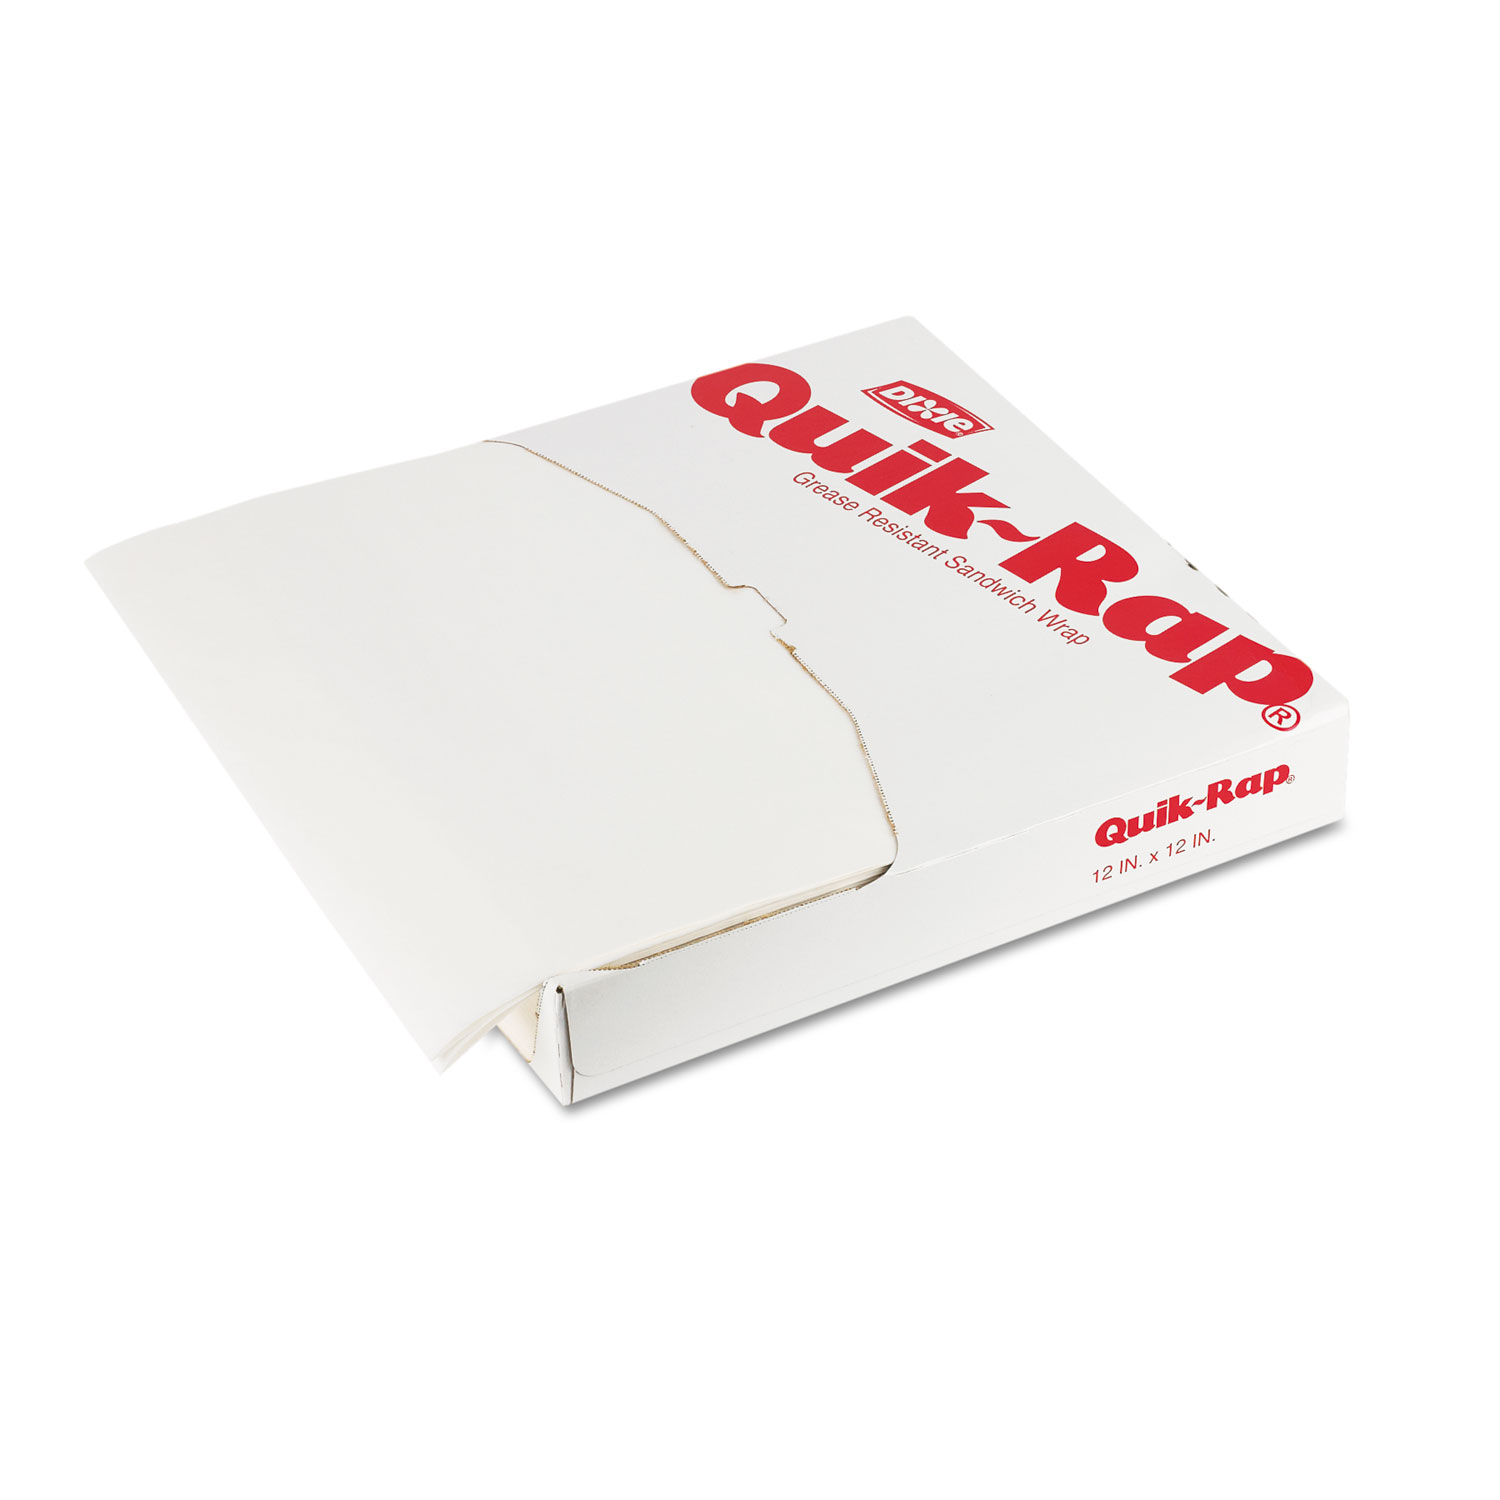  Dixie 891258 Quik-Rap Grease-Resistant Waxed Sandwich Paper,12x12,OpaqueWhite,1000/PK 5 PK/CT (DXE891258) 